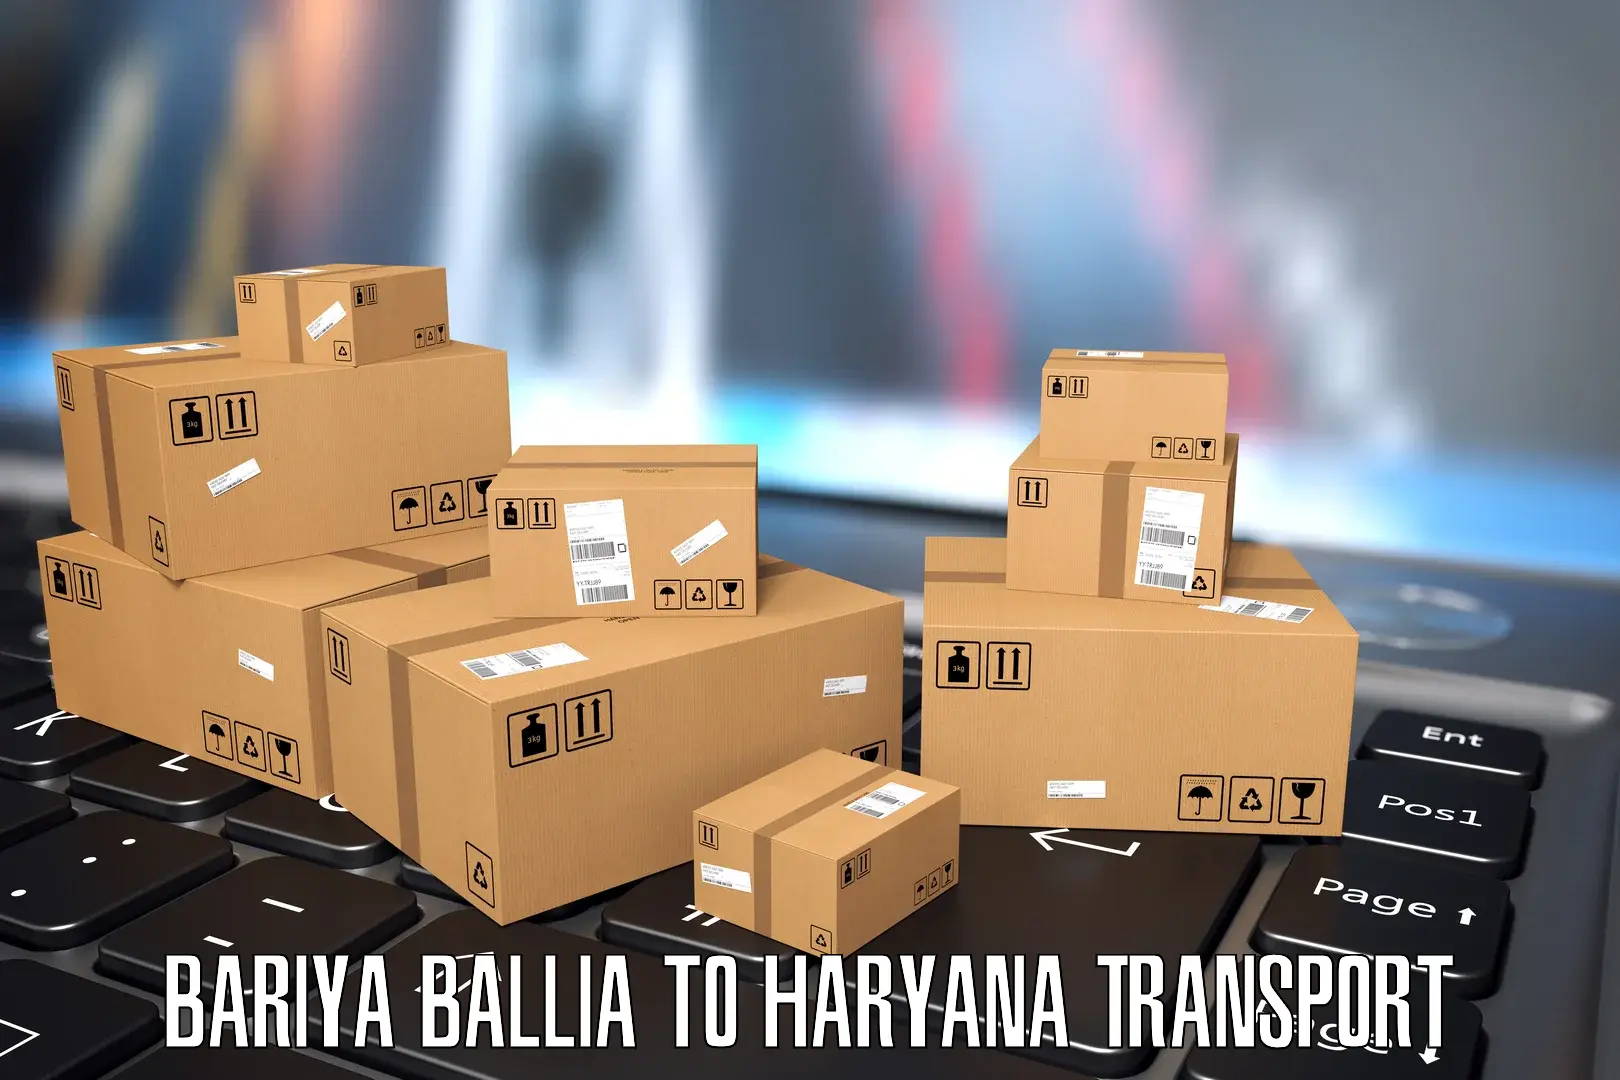 Nearest transport service Bariya Ballia to Haryana